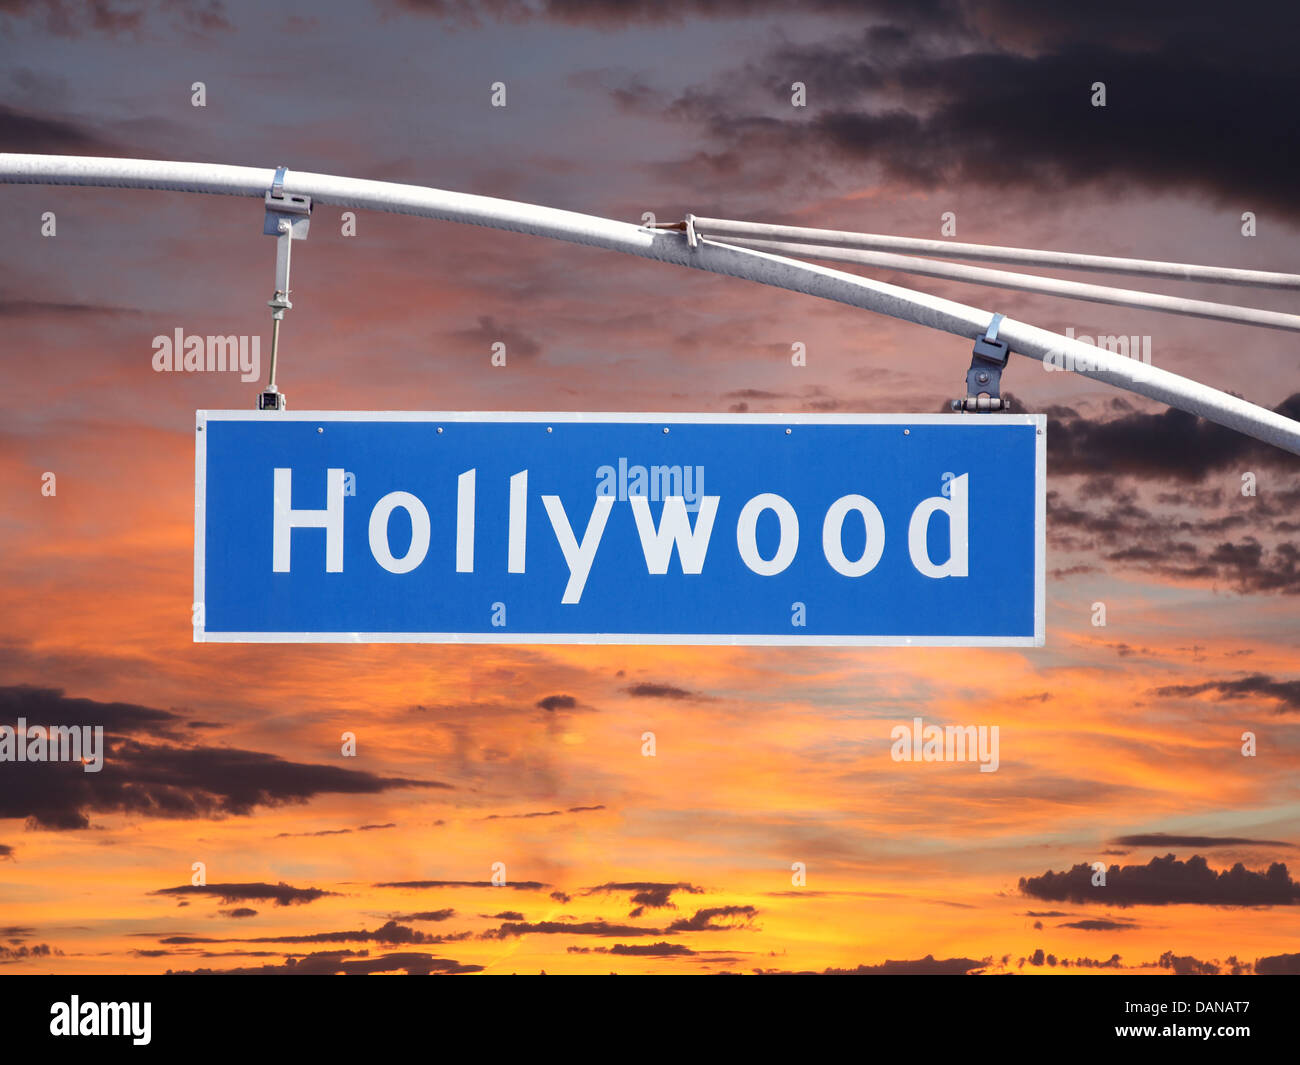 Hollywood Blvd sobrecarga calle signo con sunset sky. Foto de stock